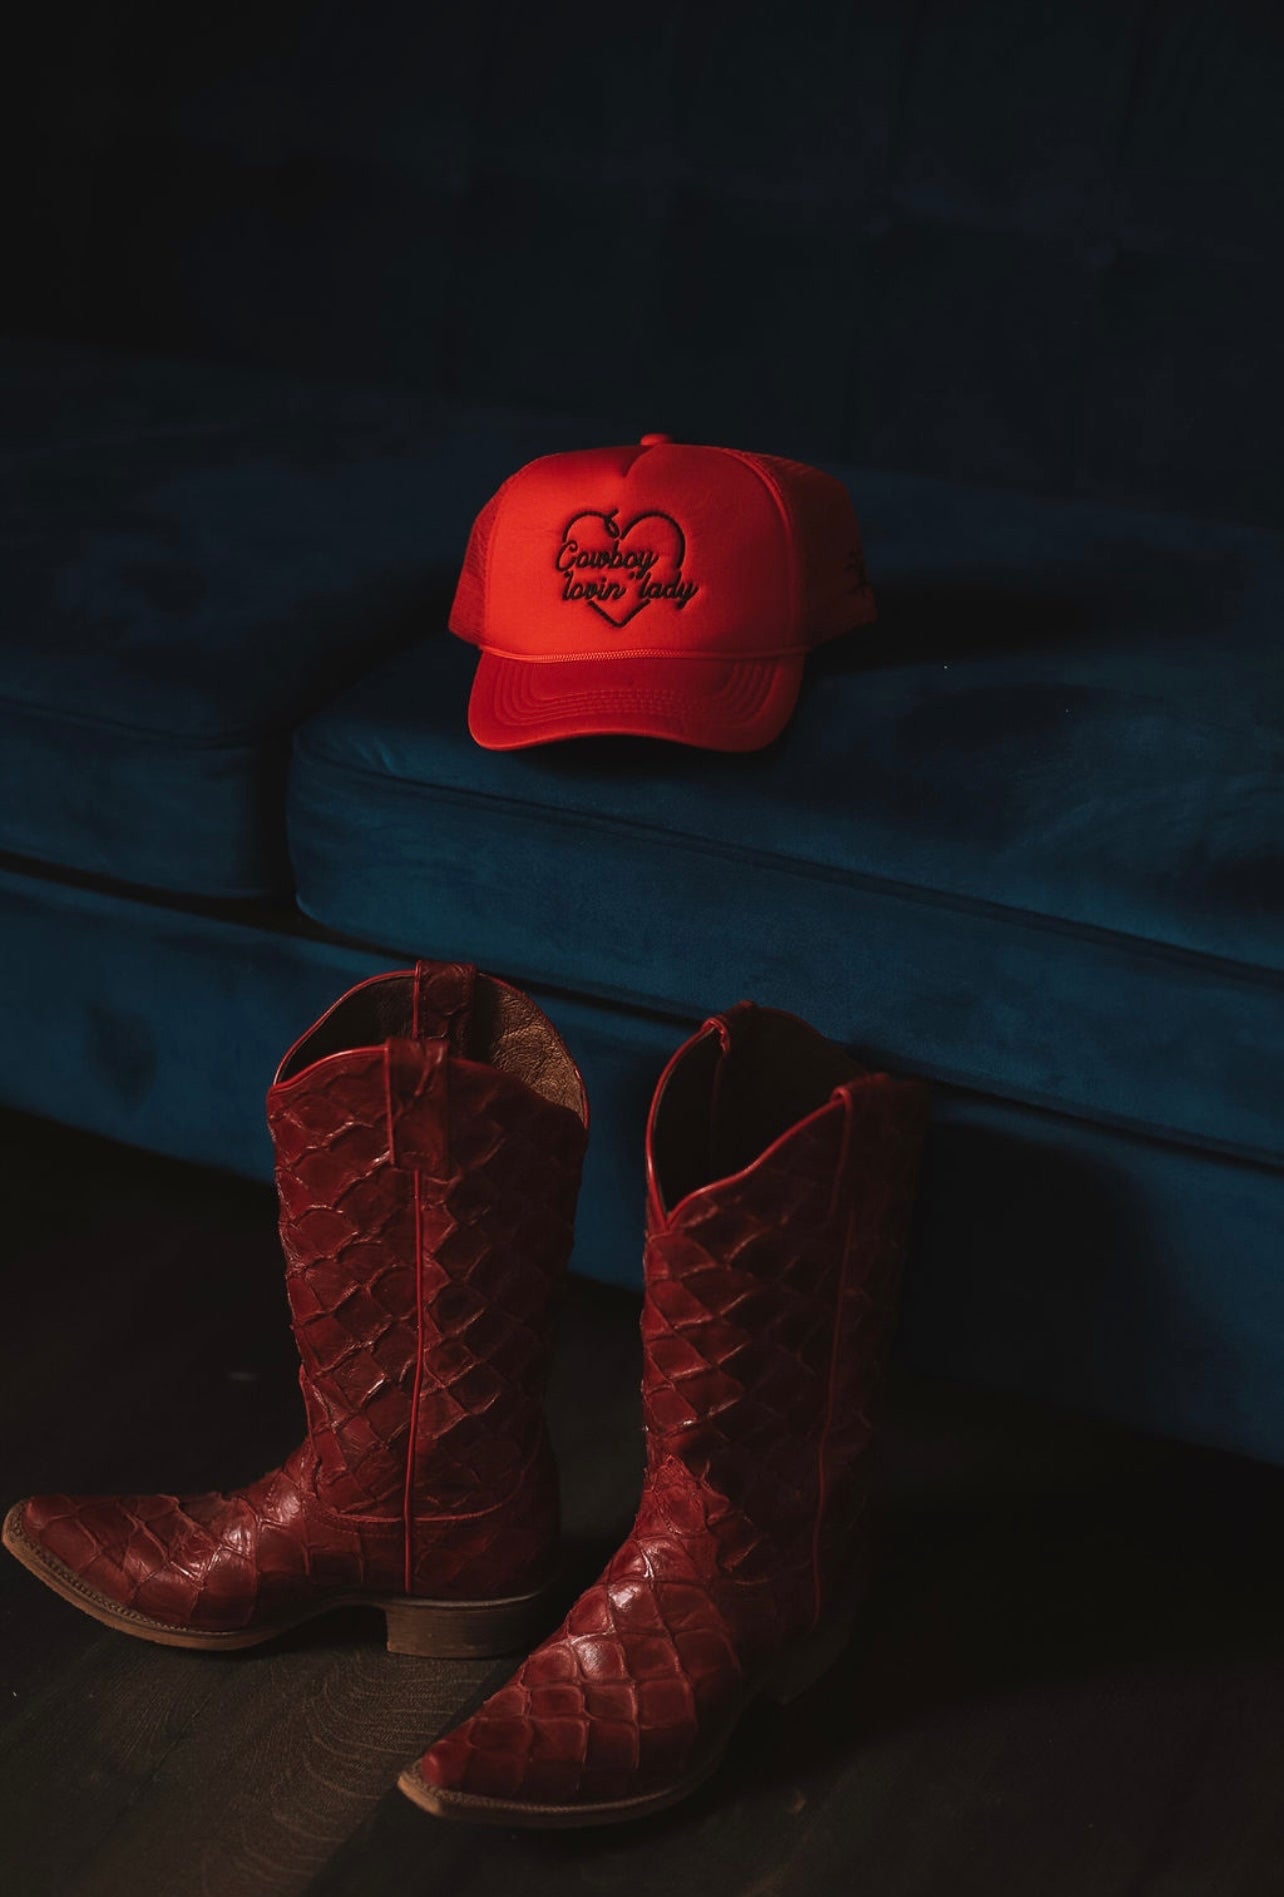 Cowboy lovin’ lady hat